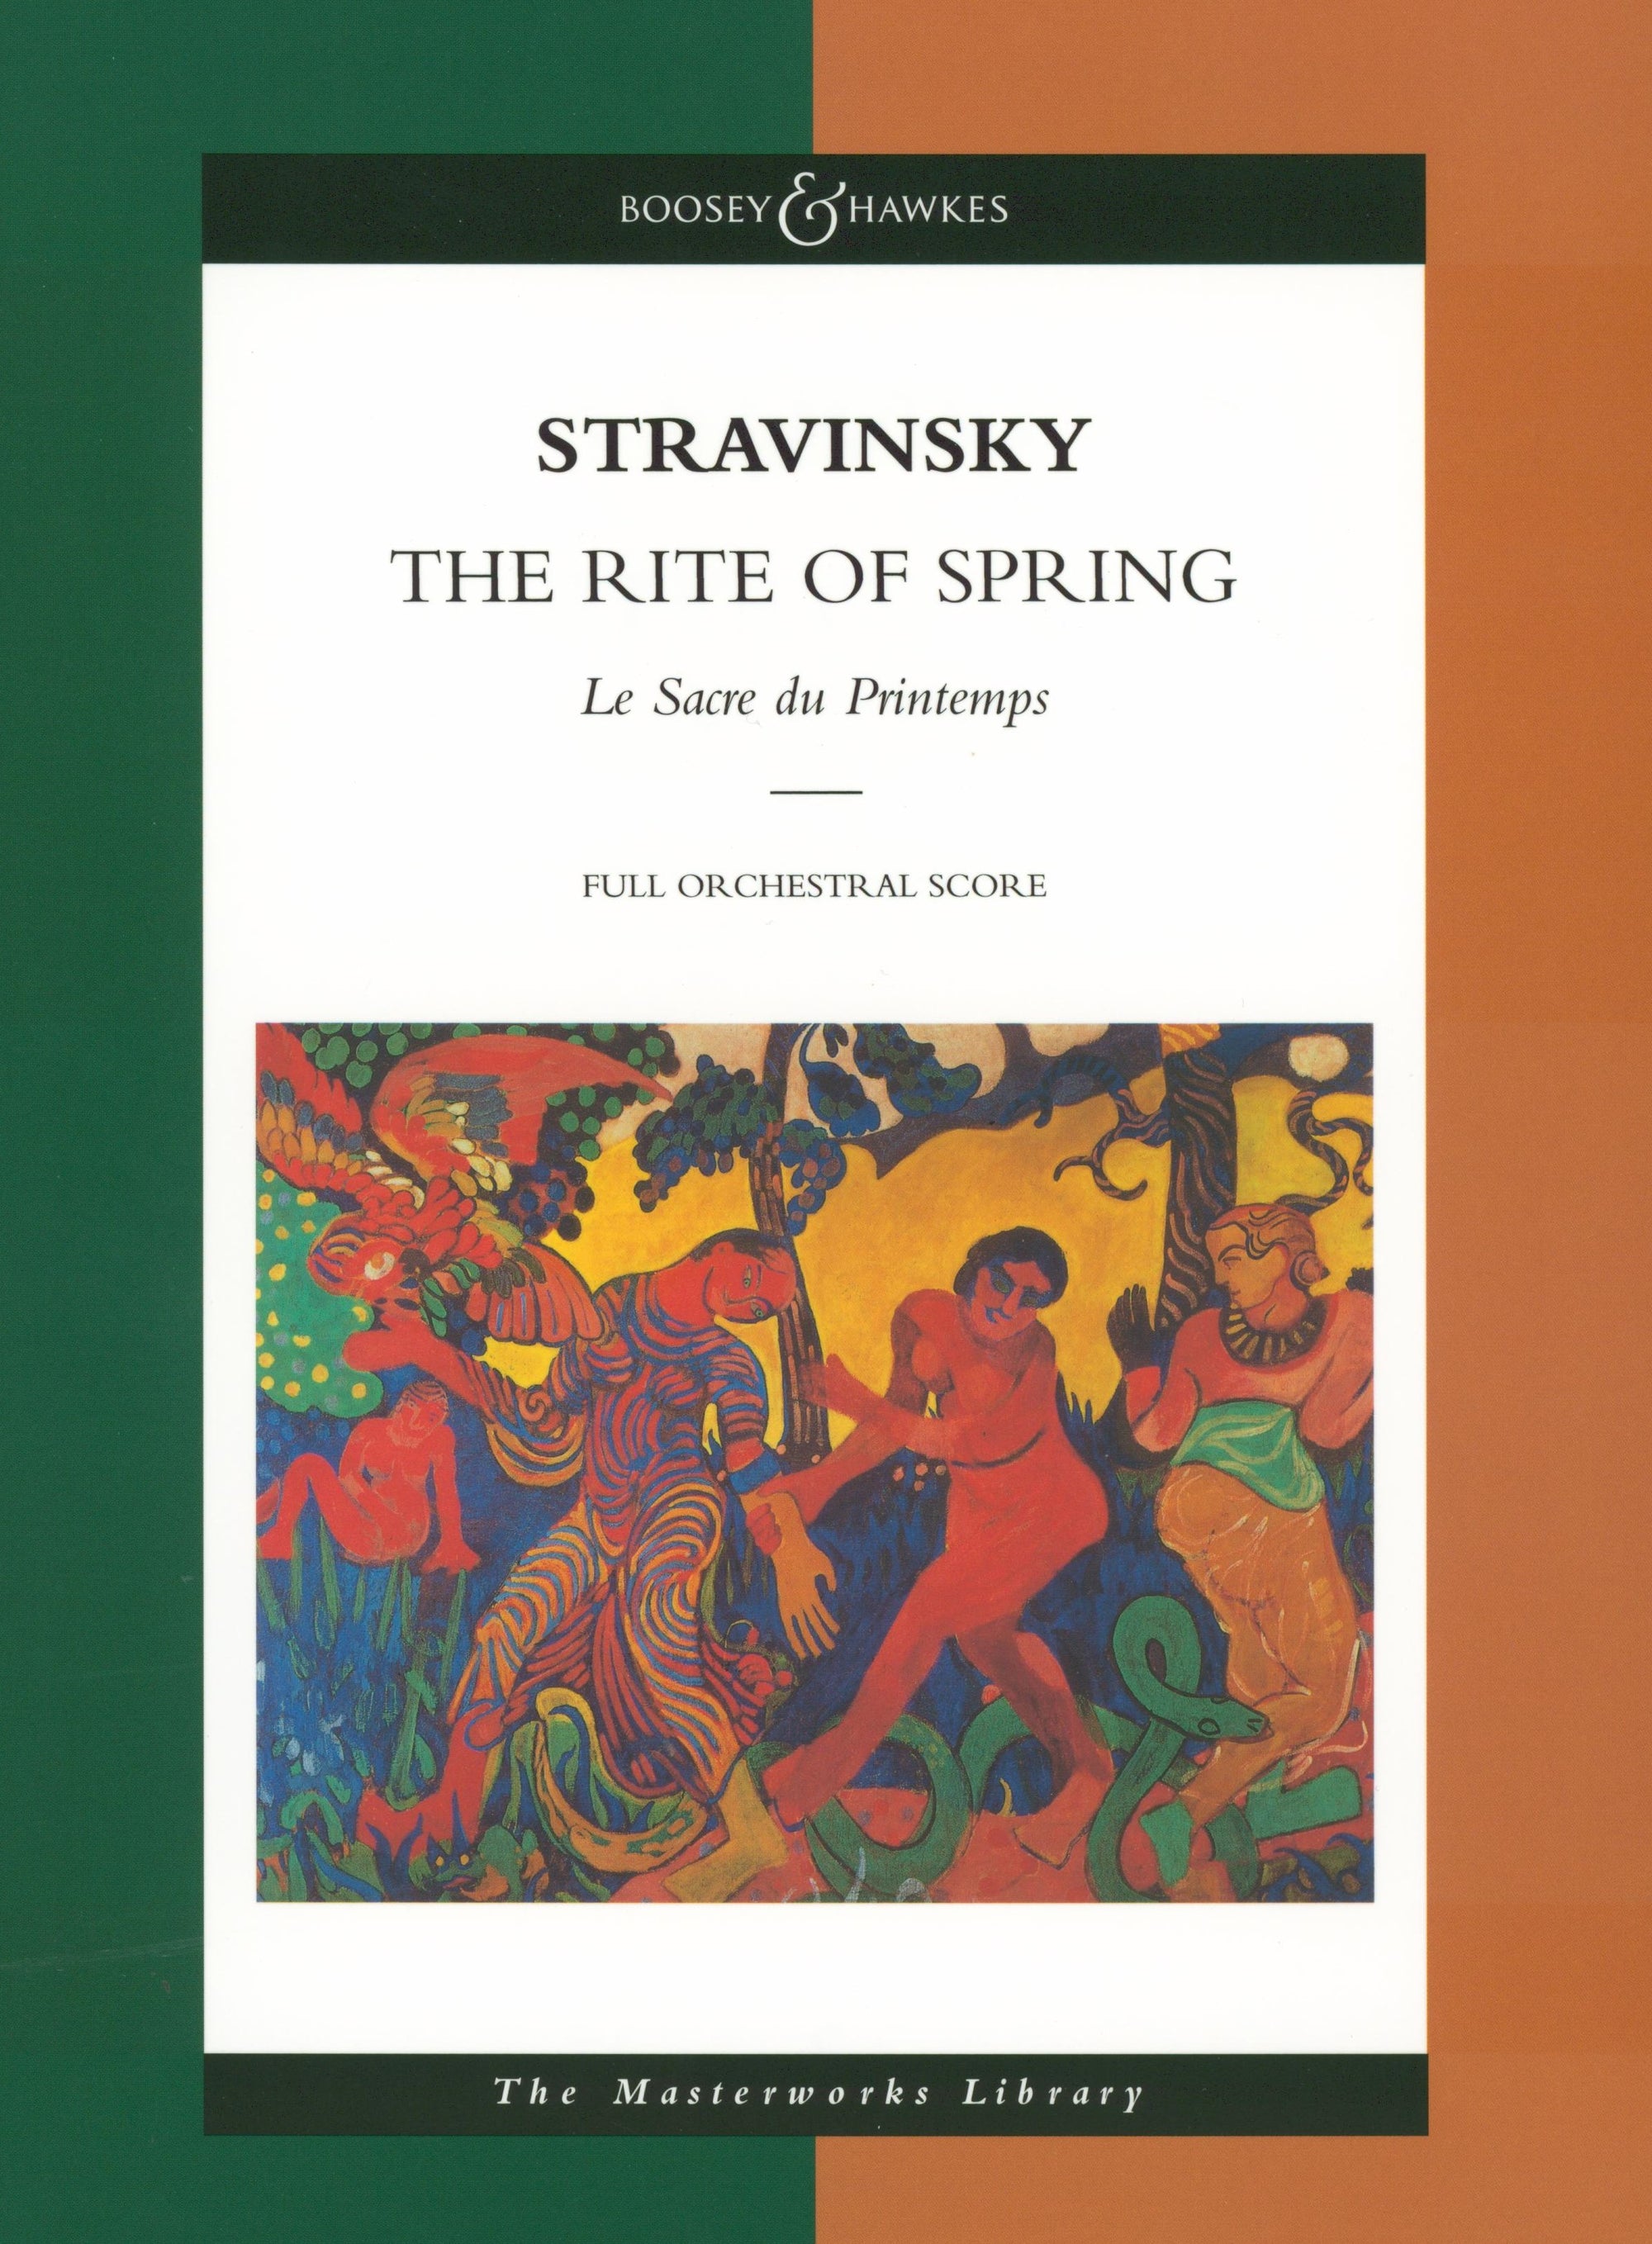 Stravinsky: Le Sacre du Printemps